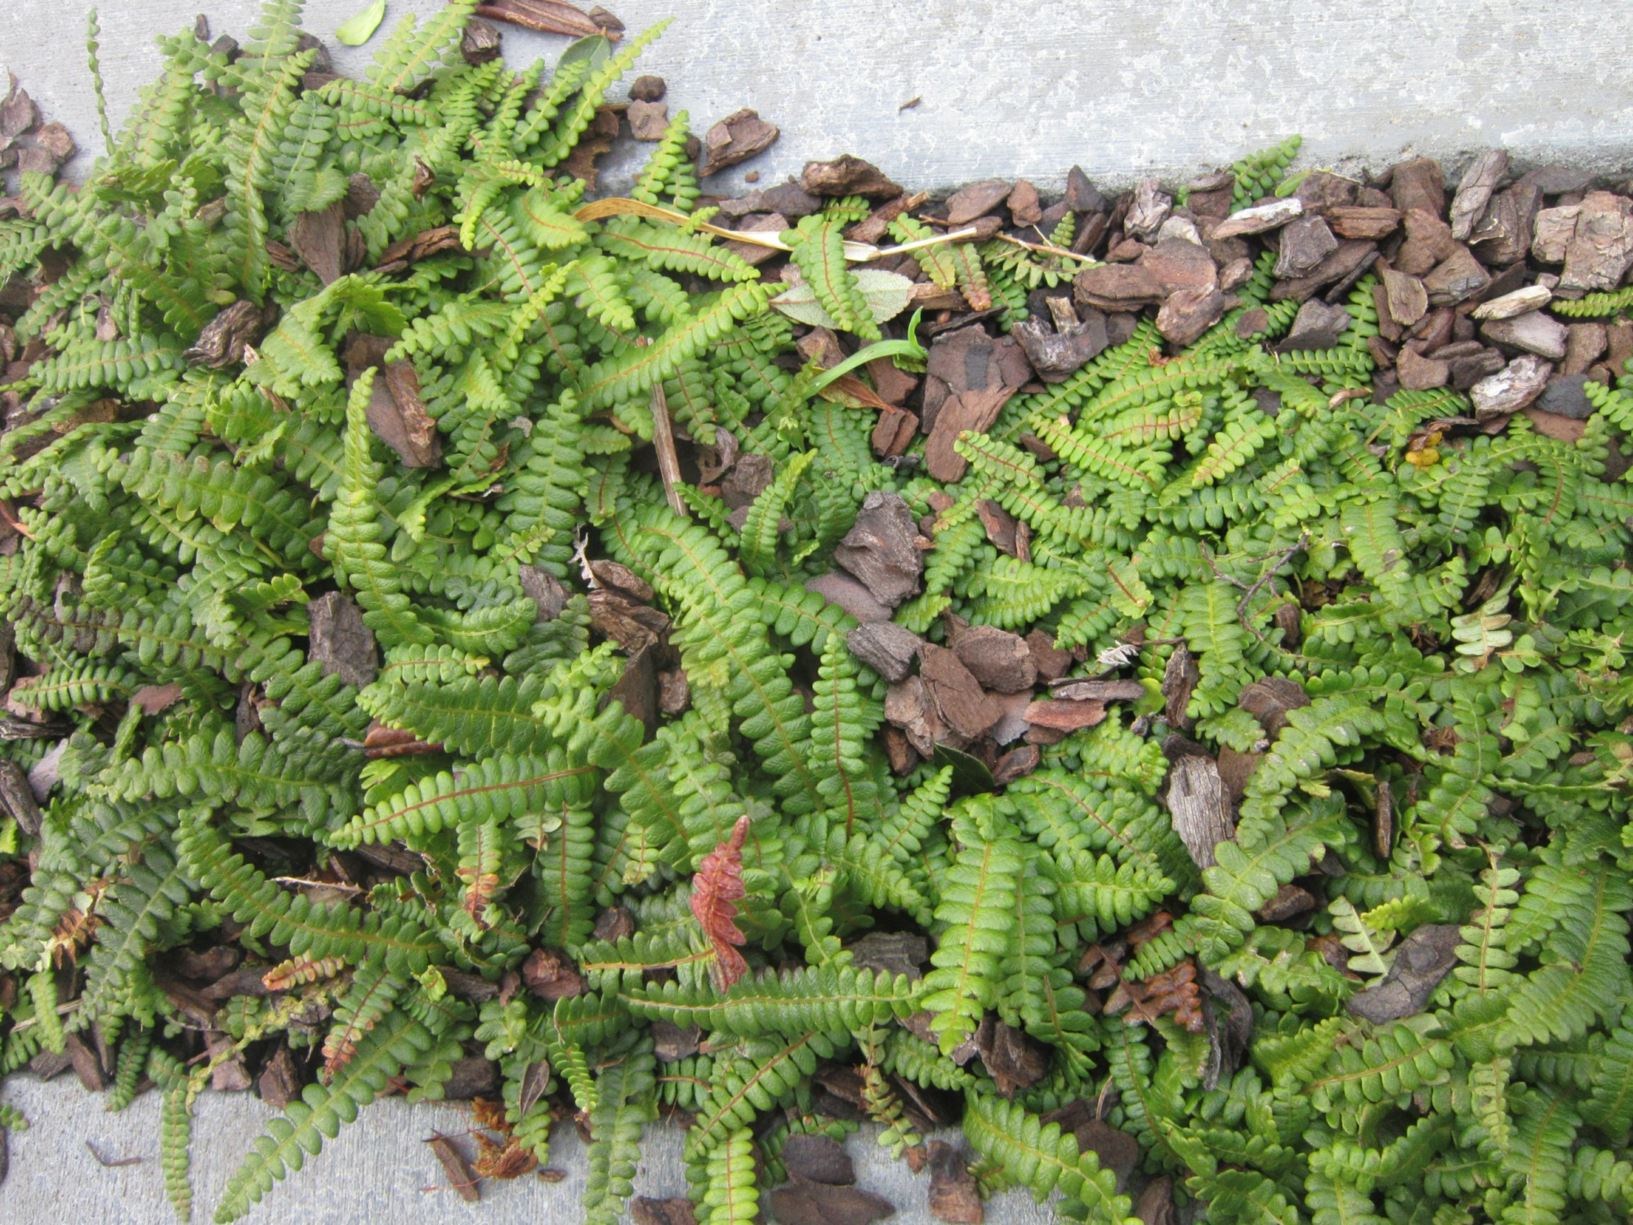 Blechnum penna-marina - little hard fern